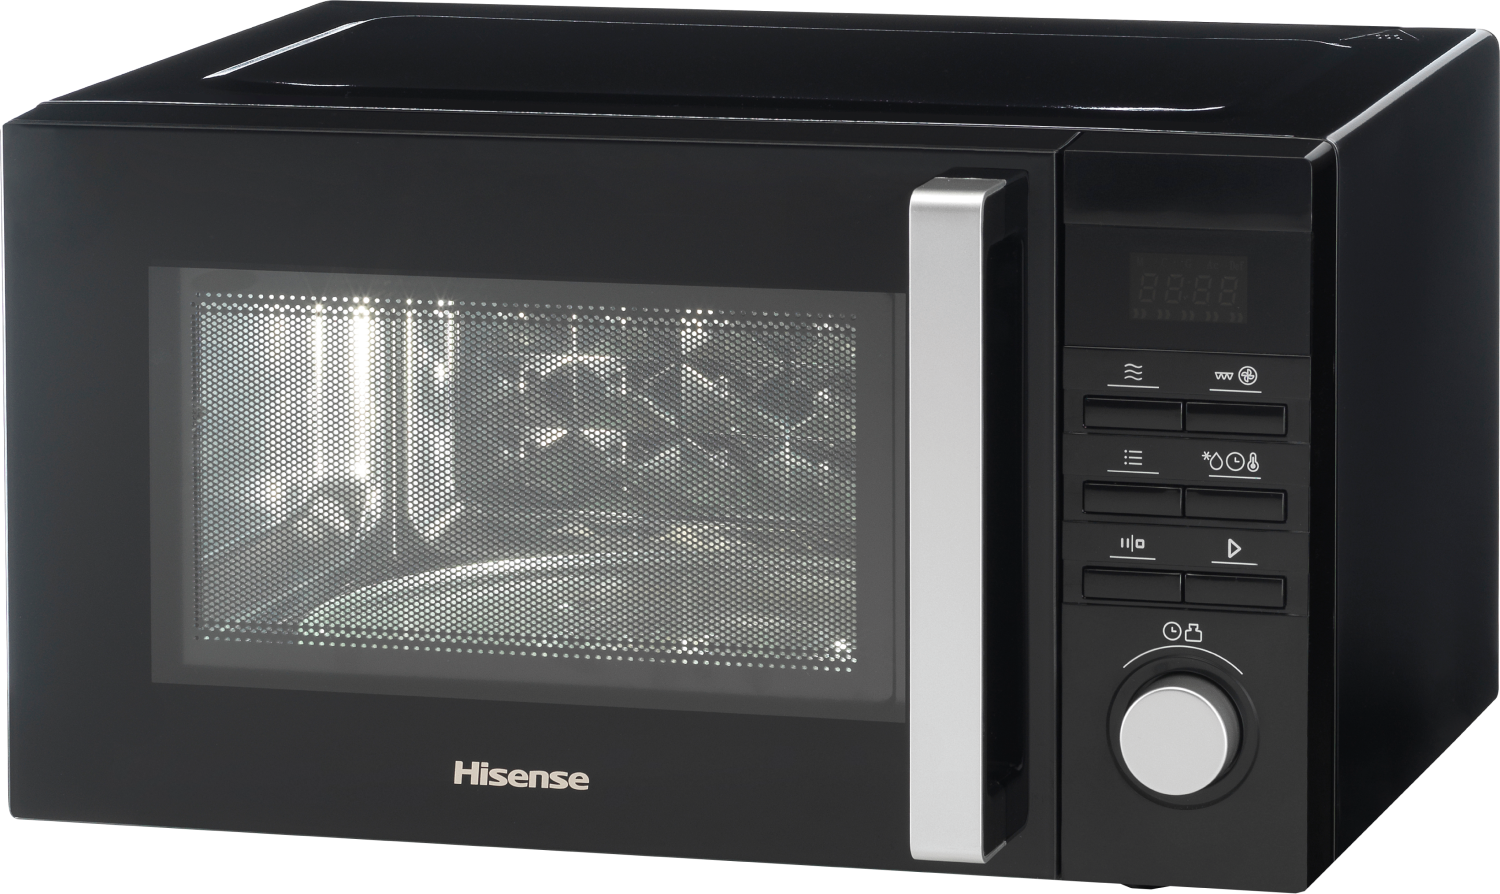 Микроволновая печь Hisense H25MOBS1HC цена 7599.00 грн - фотография 2